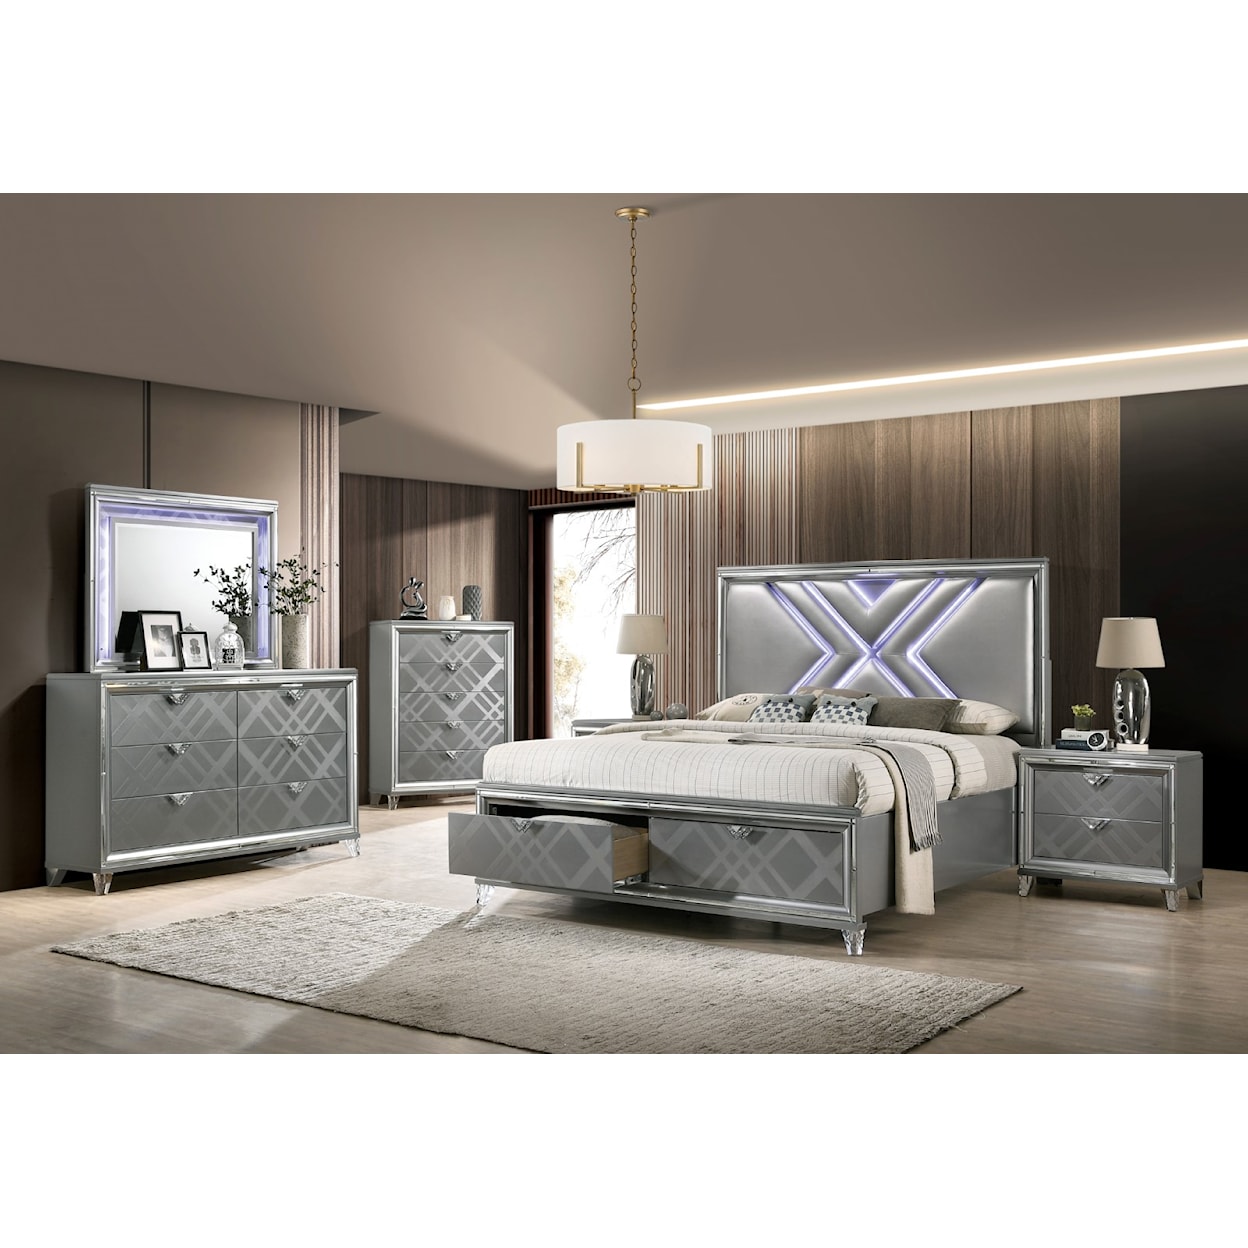 Furniture of America Emmeline King Bedroom Set